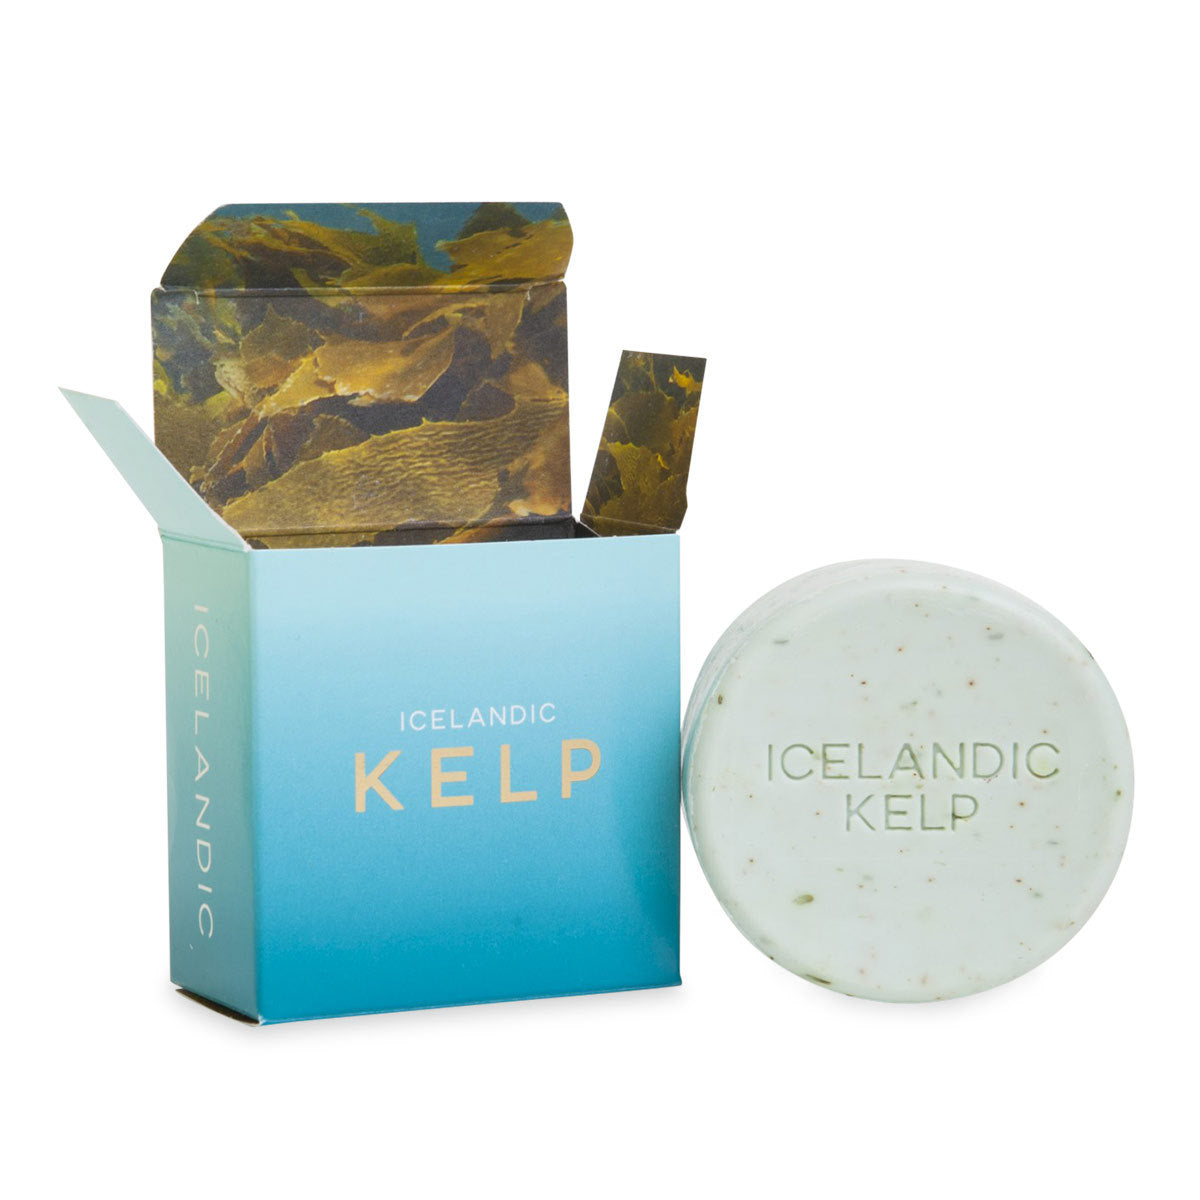 Primary image of Icelandic Kelp Soap